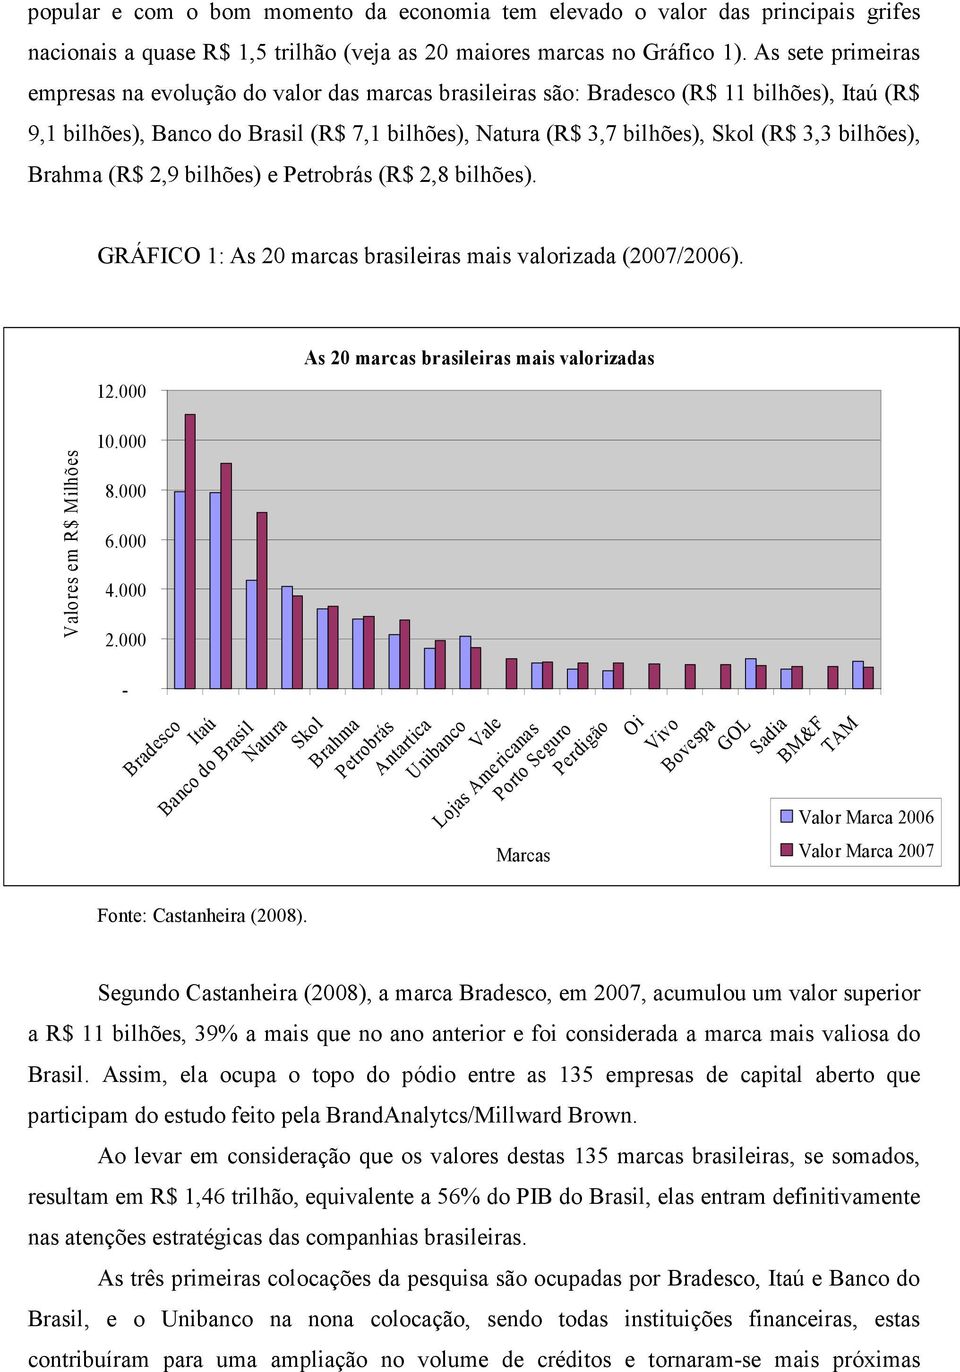 bilhões), Brahma (R$ 2,9 bilhões) e Petrobrás (R$ 2,8 bilhões). GRÁFICO 1: As 20 marcas brasileiras mais valorizada (2007/2006). 12.000 As 20 marcas brasileiras mais valorizadas 10.